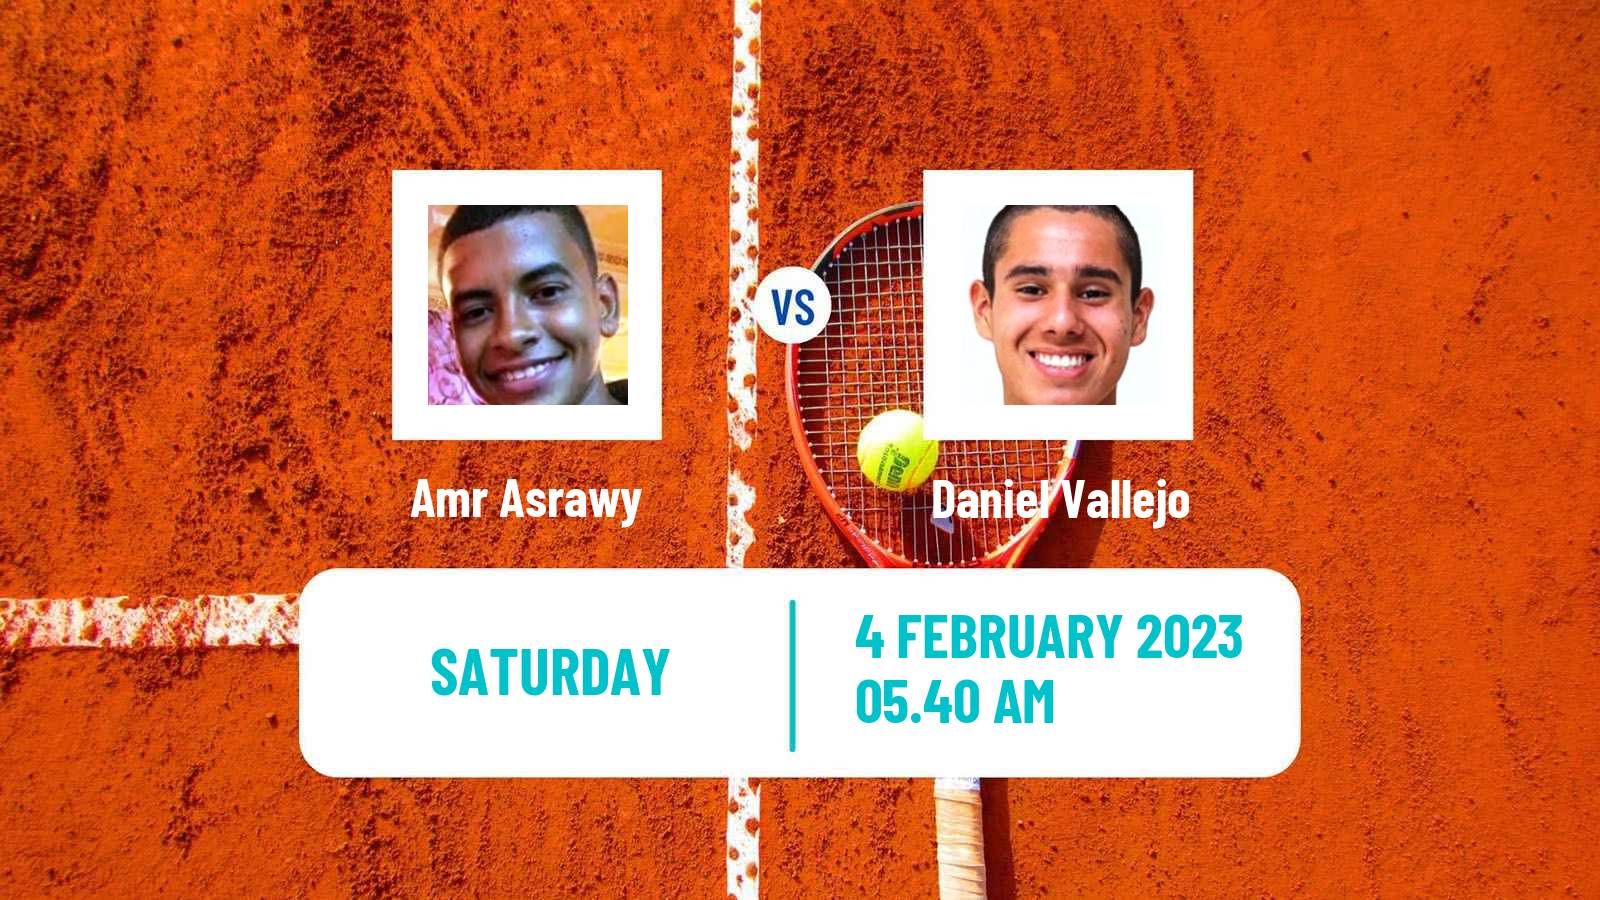 Tennis Davis Cup World Group II Amr Asrawy - Daniel Vallejo